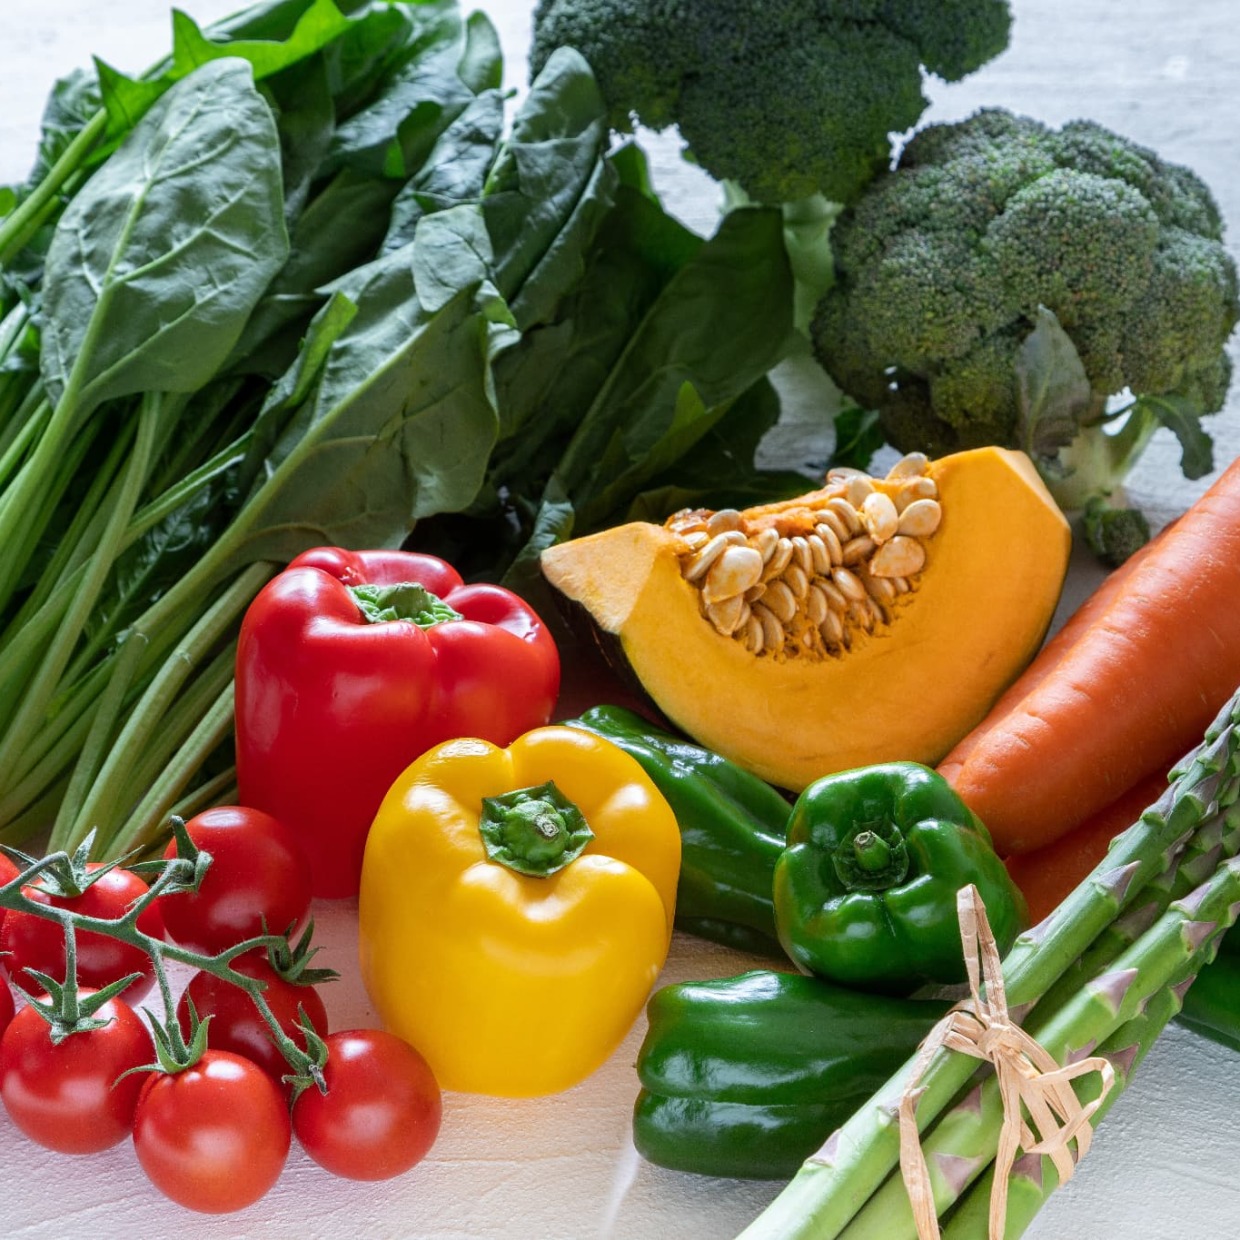 「糖尿病」の予防や改善に役立つ野菜。食べるときにやりがちな“NG行為”とは？